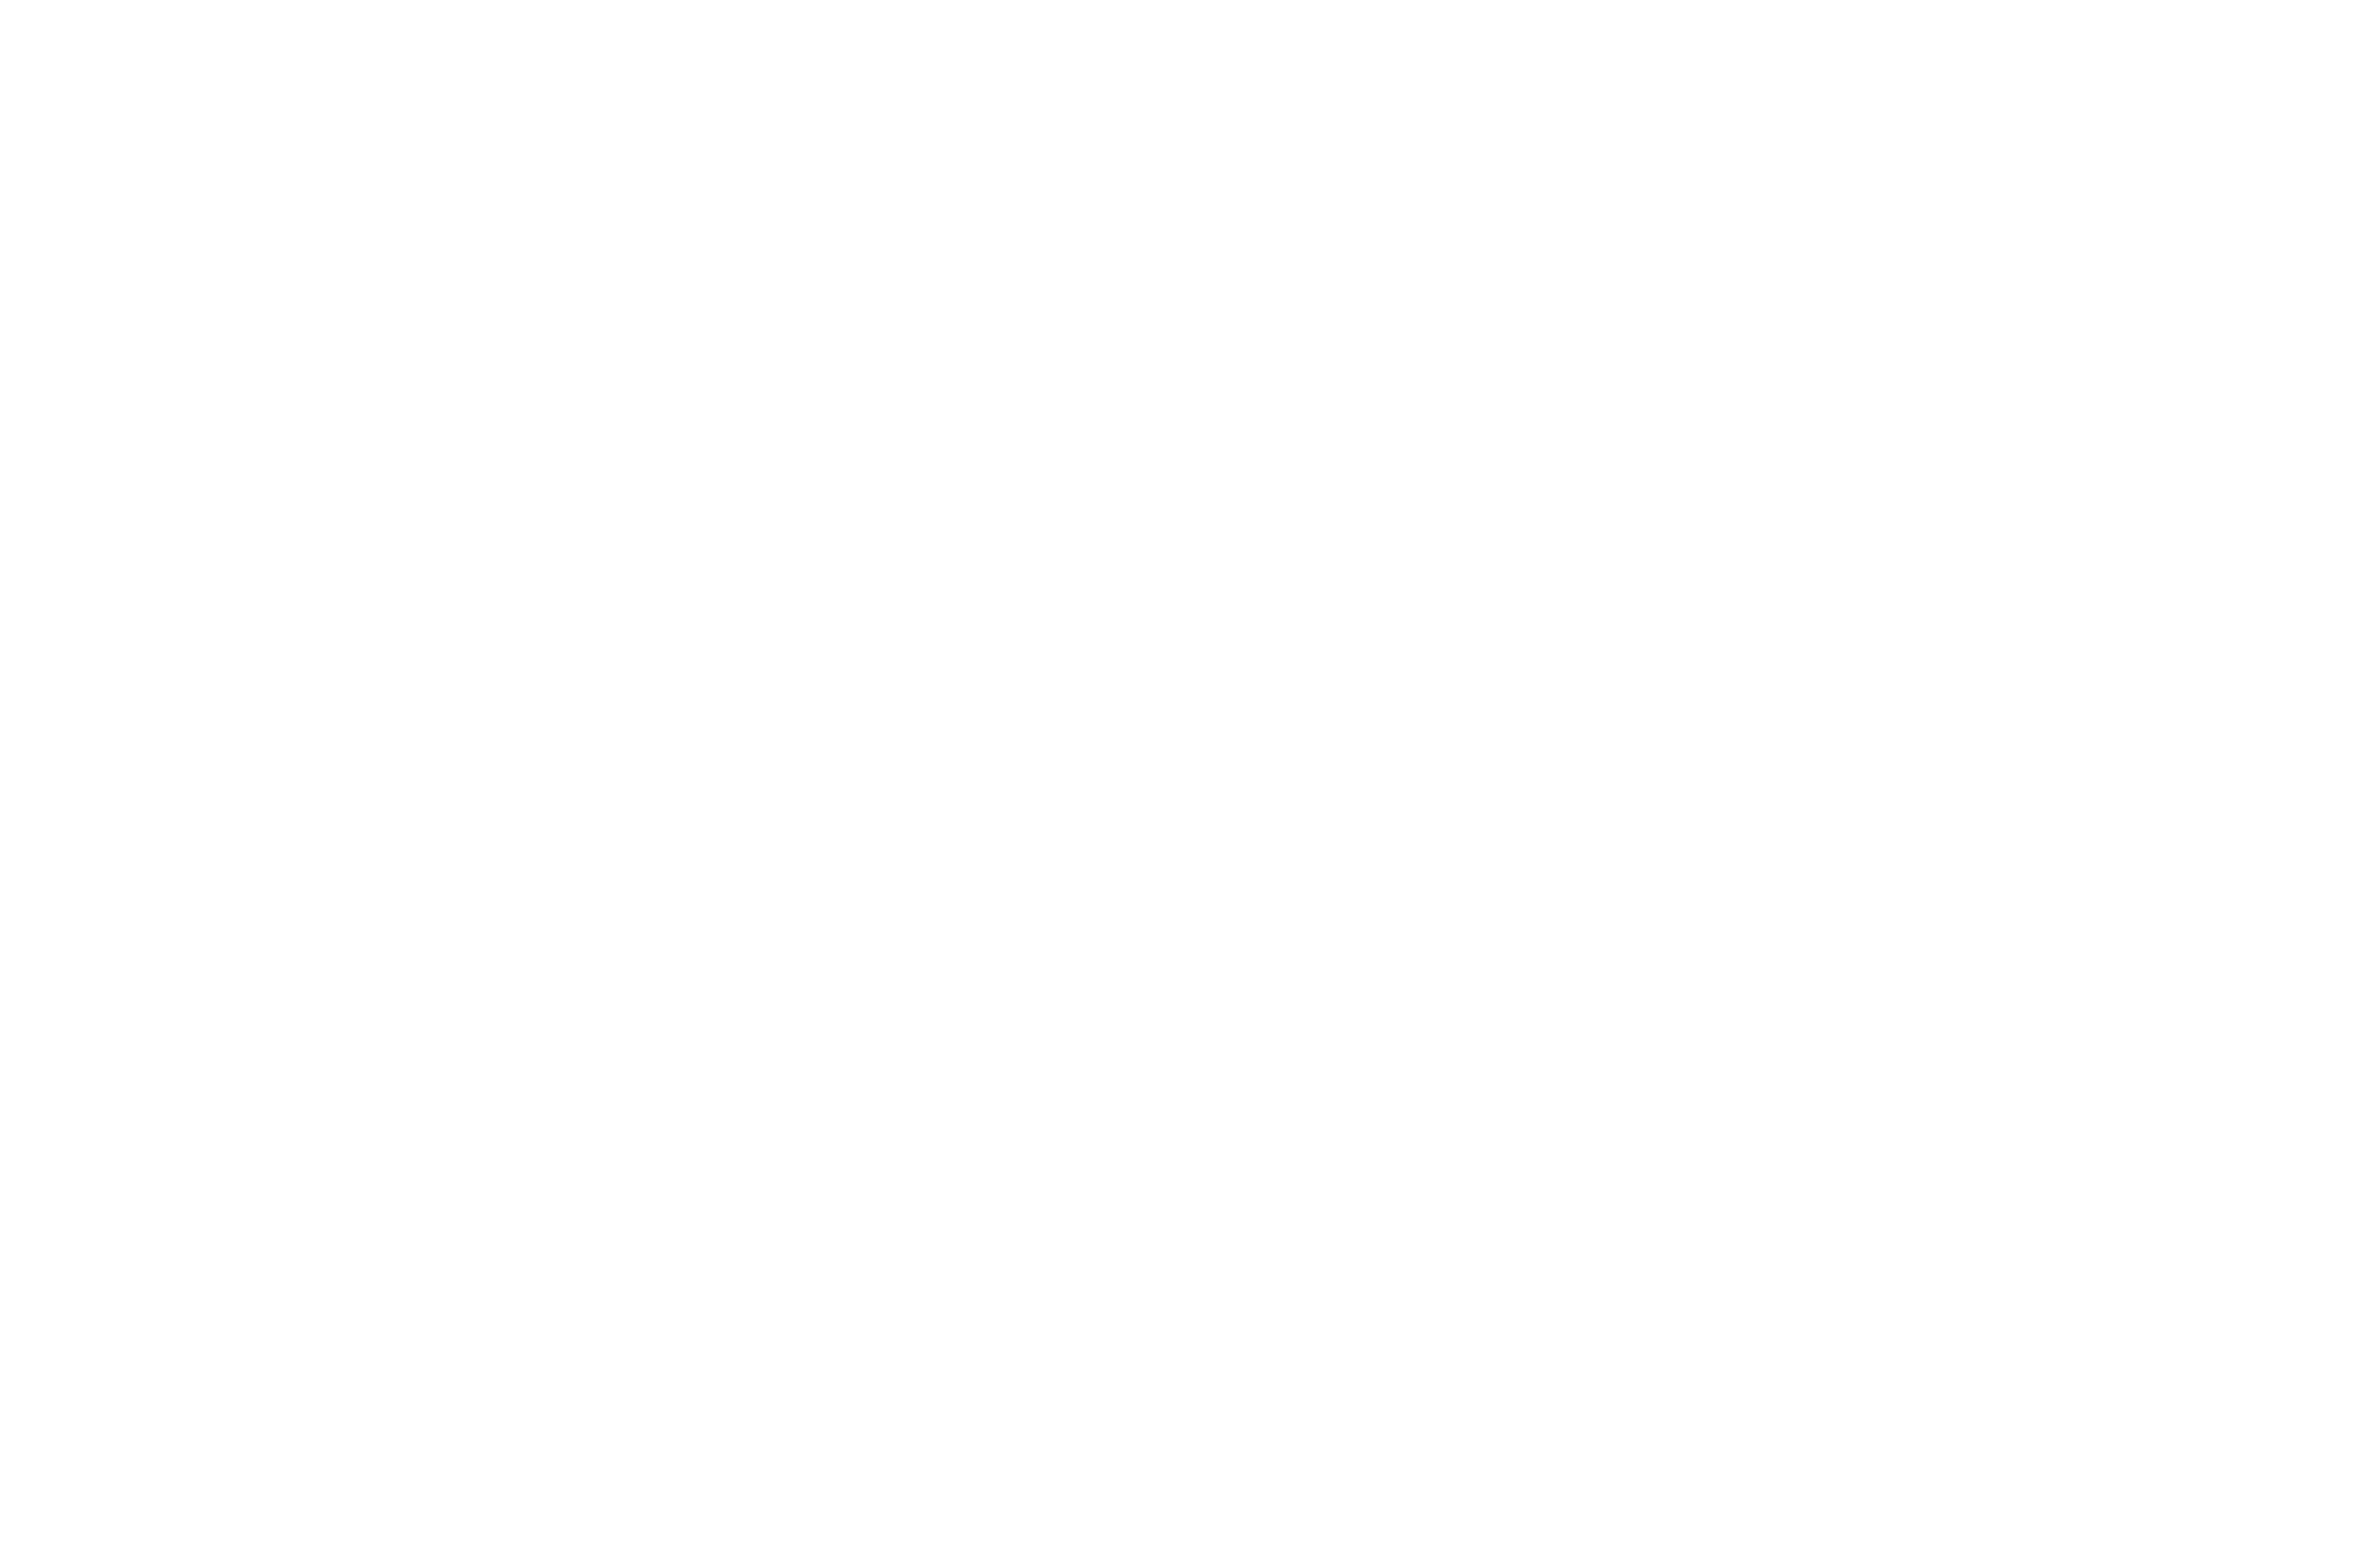 Avignon International Film Festival